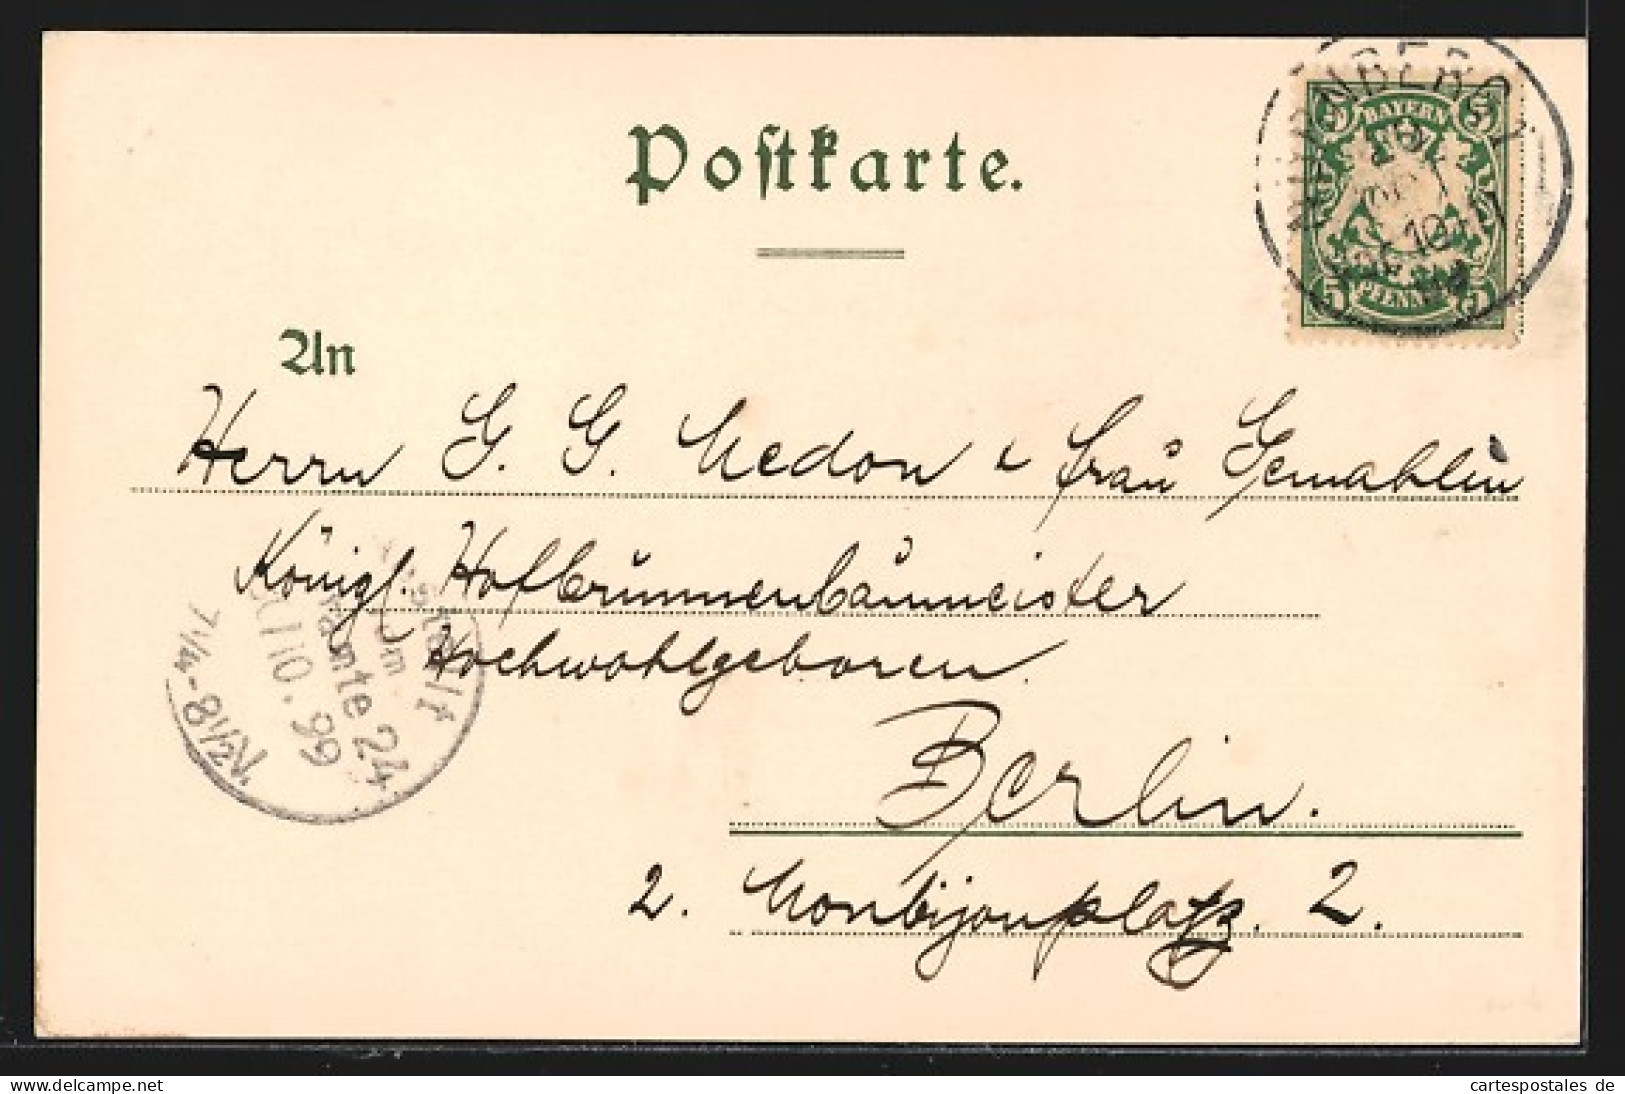 Lithographie Nürnberg, Schöner-brunnen, Teilansicht, Mit Wappen  - Nuernberg